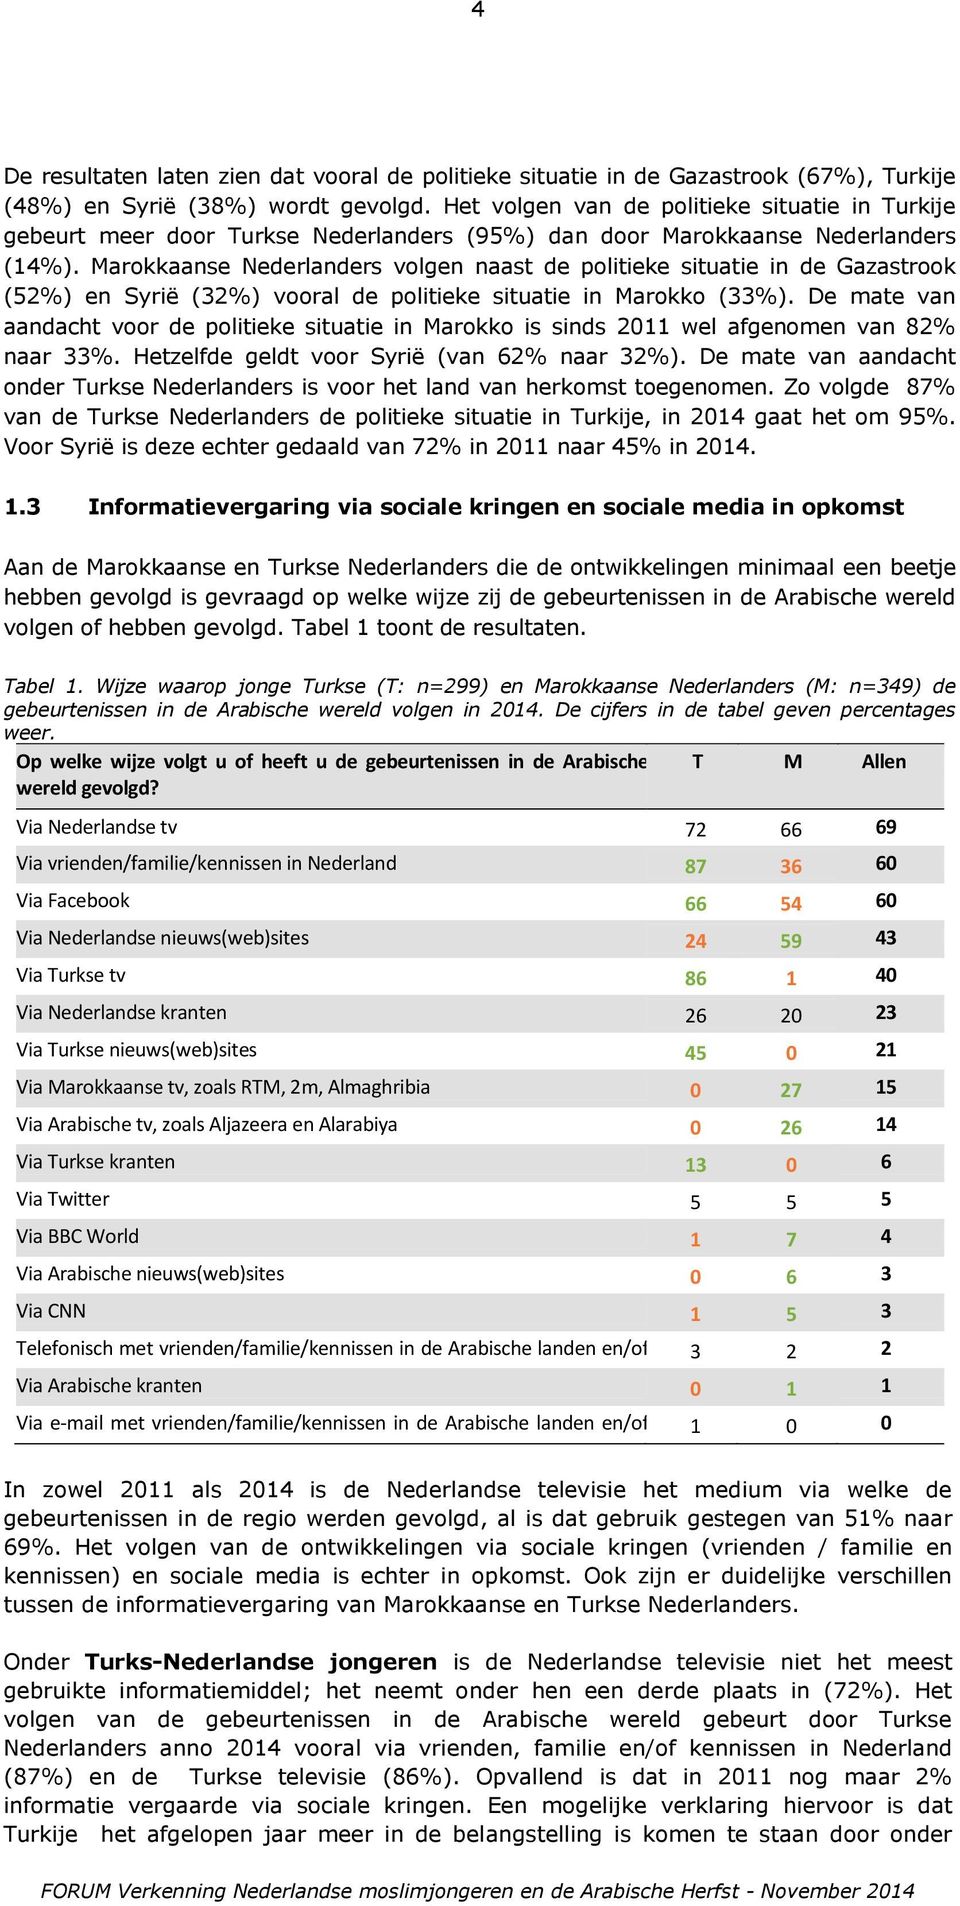 Marokkaanse Nederlanders volgen naast de politieke situatie in de Gazastrook (52%) en Syrië (32%) vooral de politieke situatie in Marokko (33%).